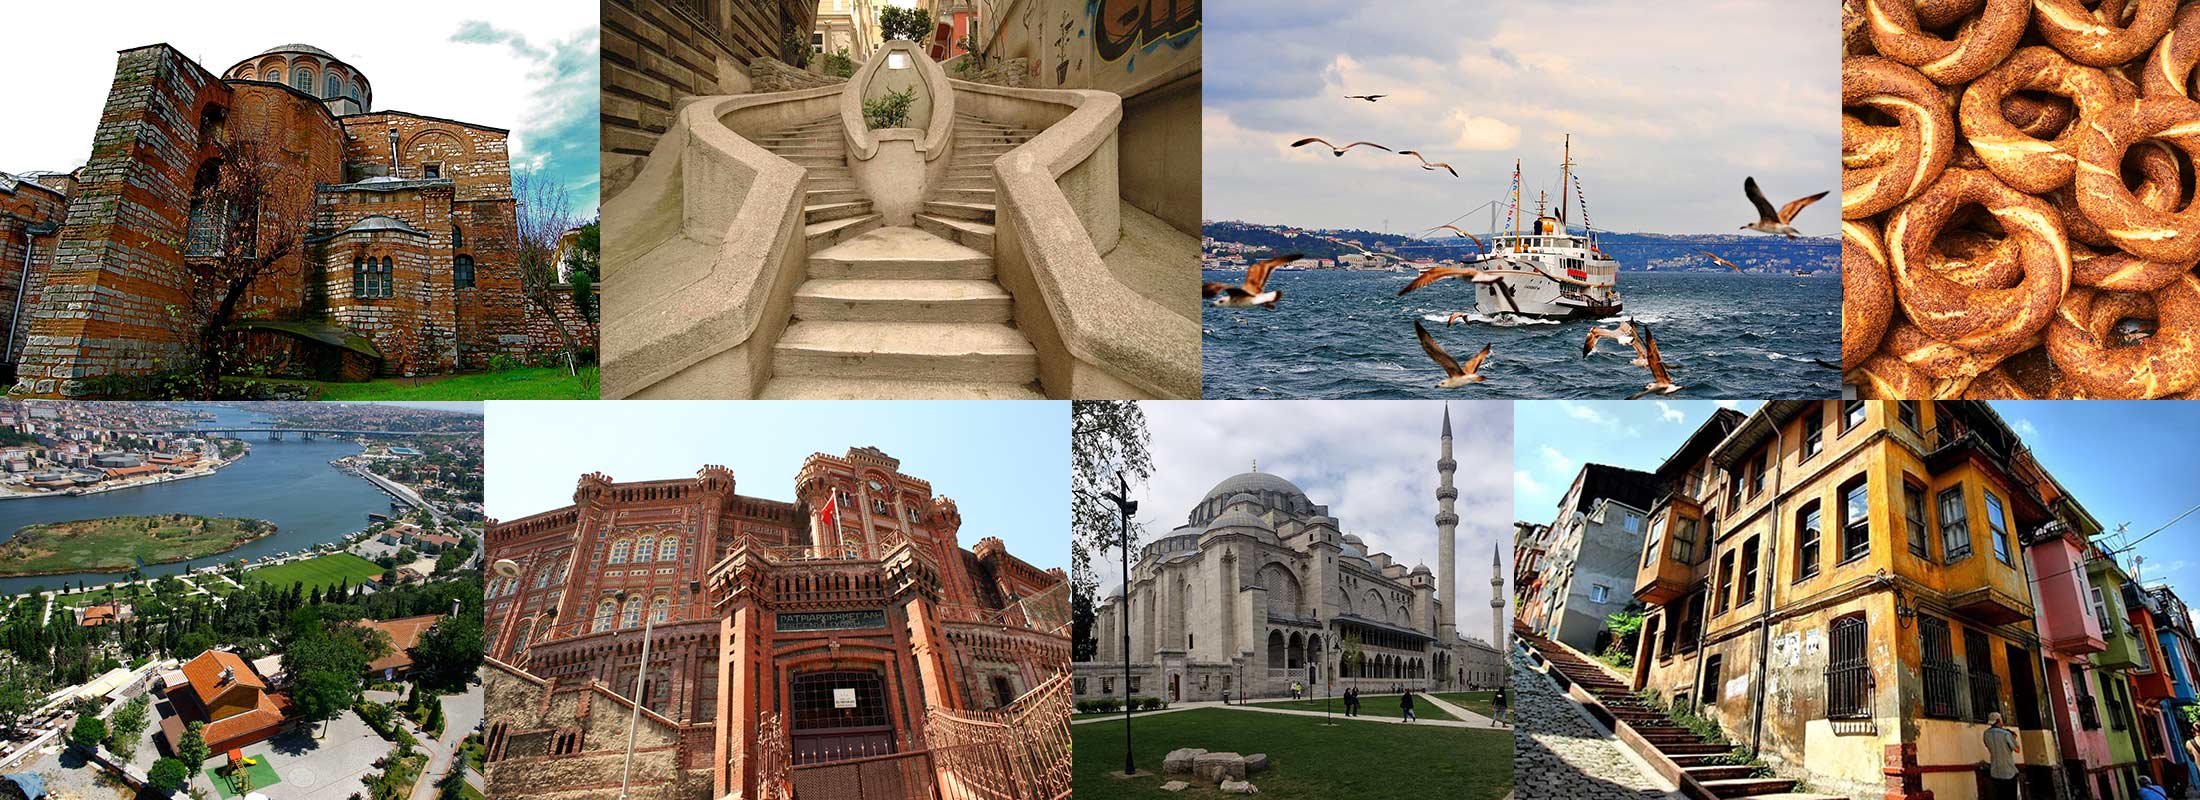 istanbul-walking-tours